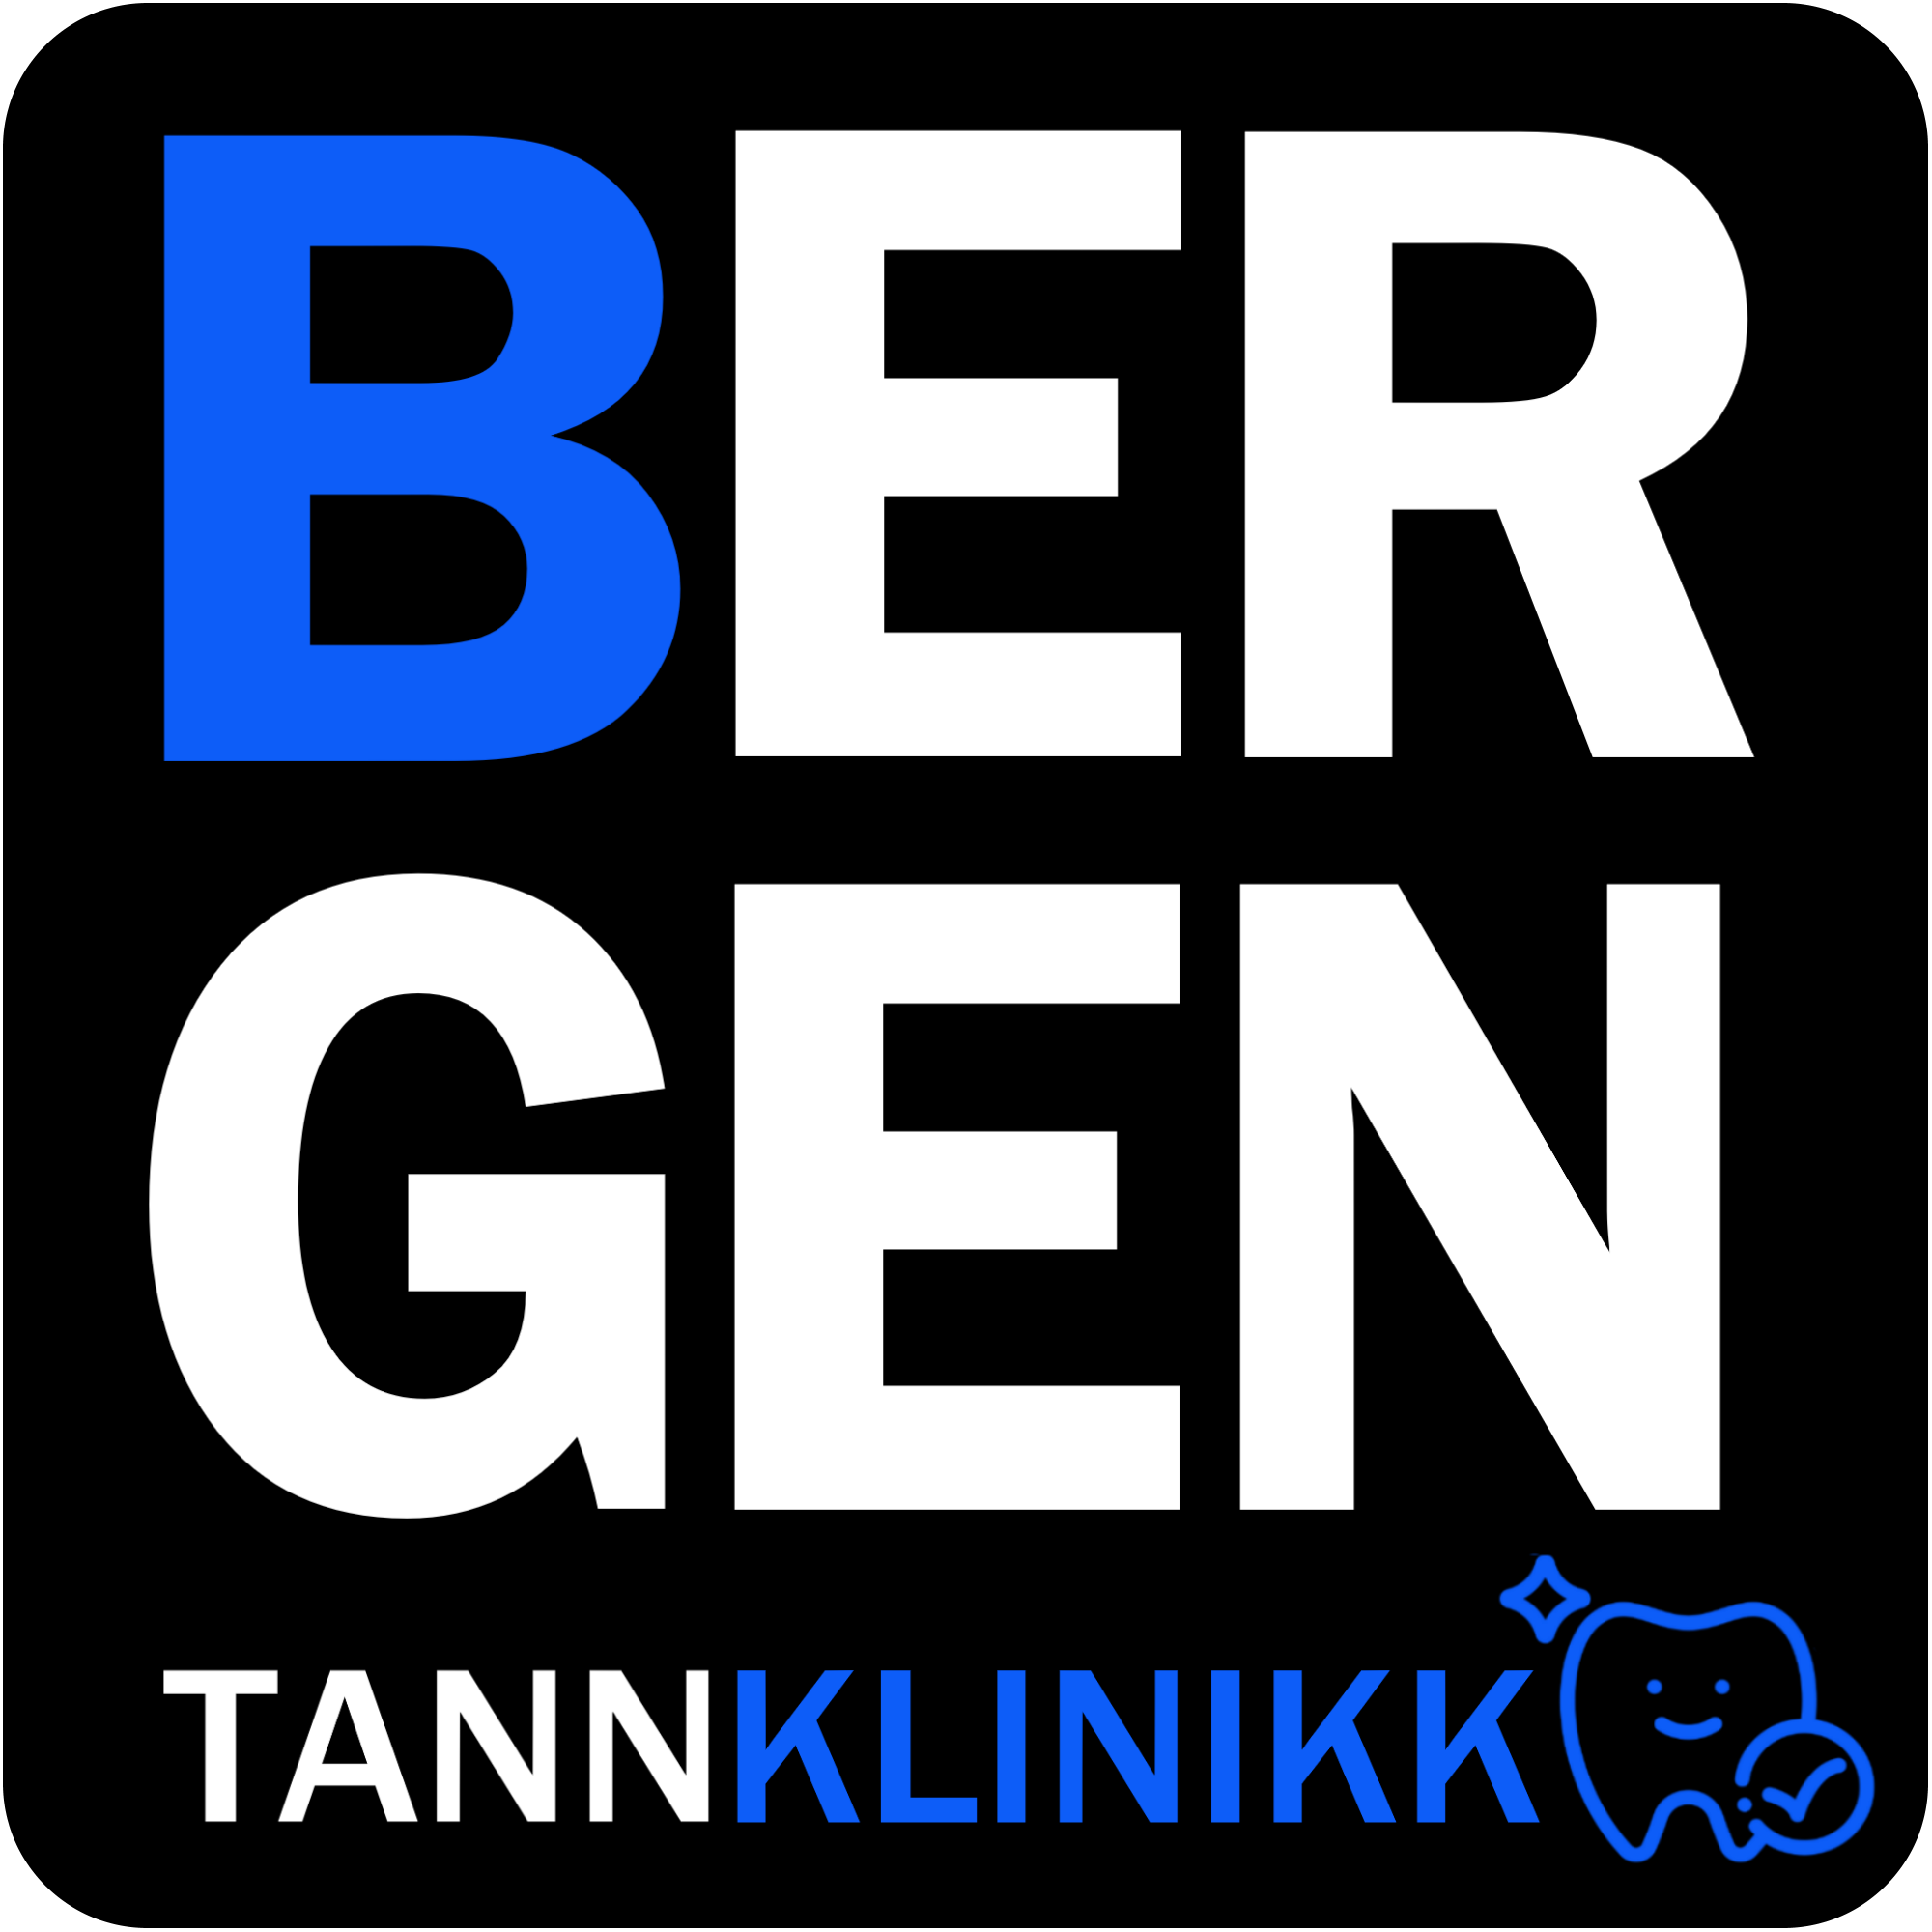 Bergen Tannklinikk logo mørk